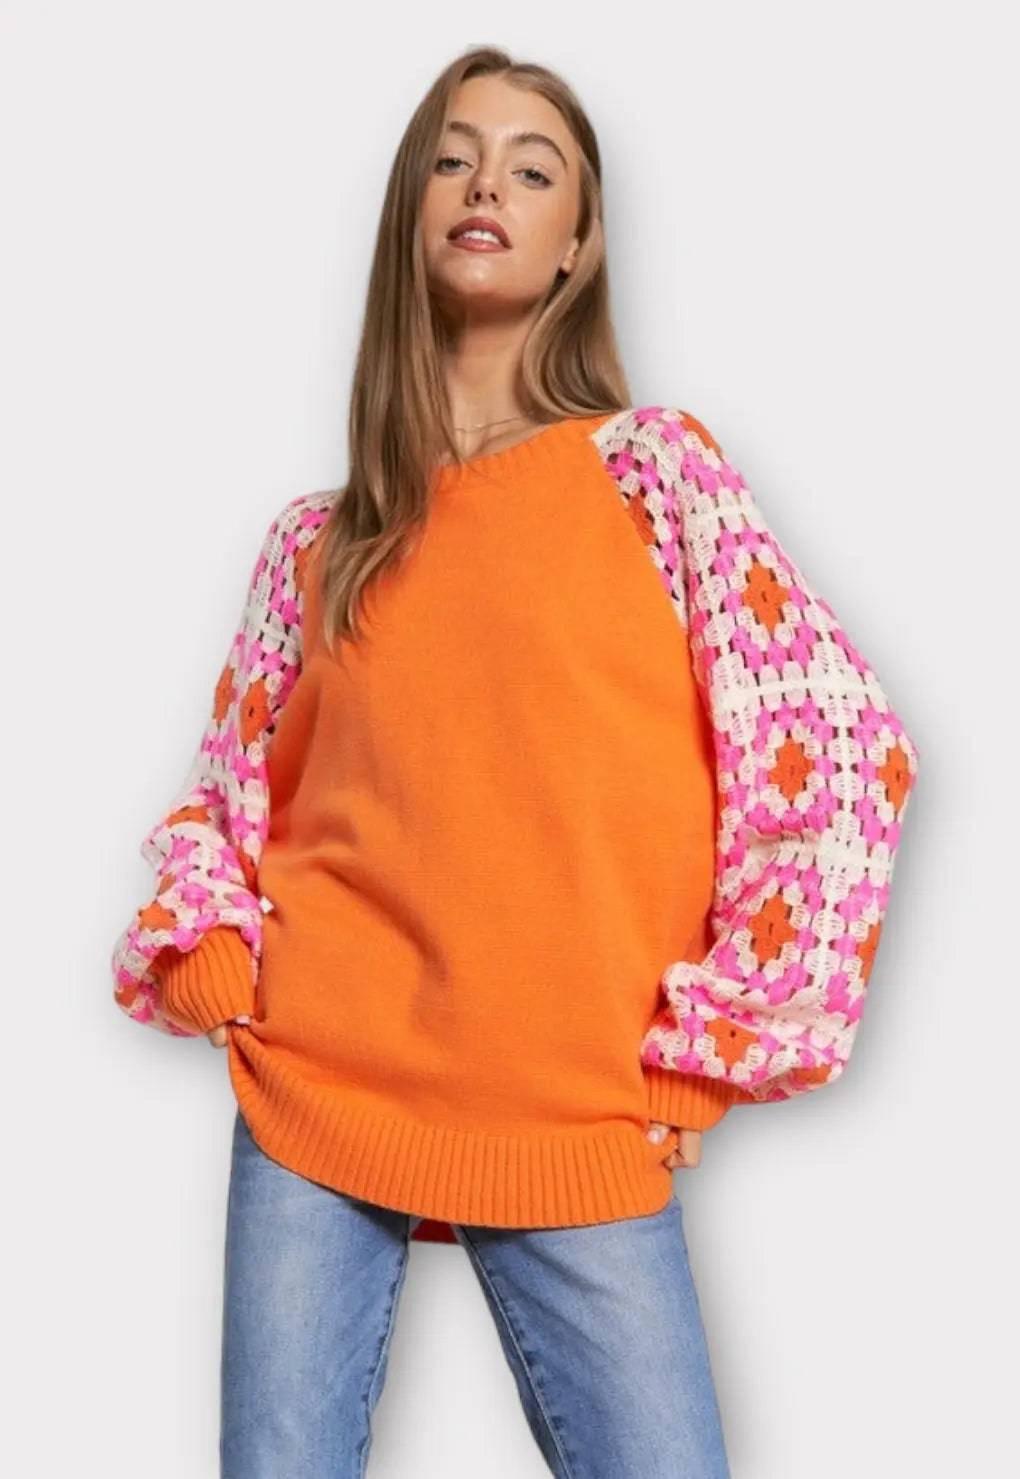 Crochet knit long sleeved sweater Sweaters